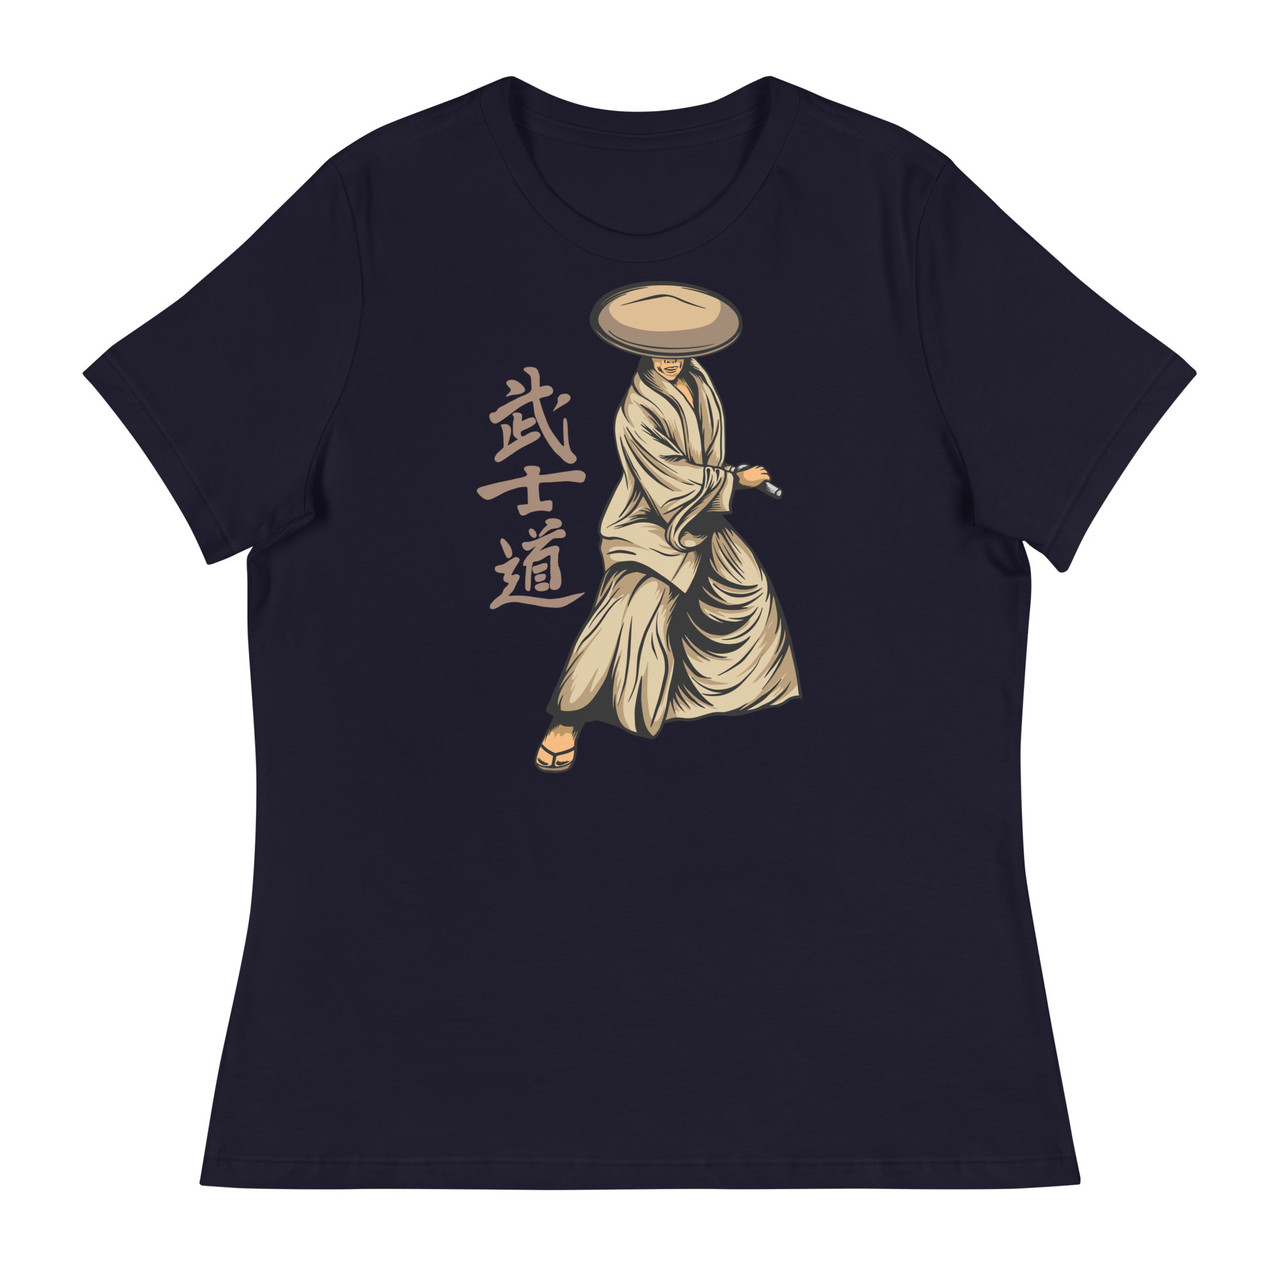 Samurai 13 Women's Relaxed T-Shirt - Bella + Canvas 6400